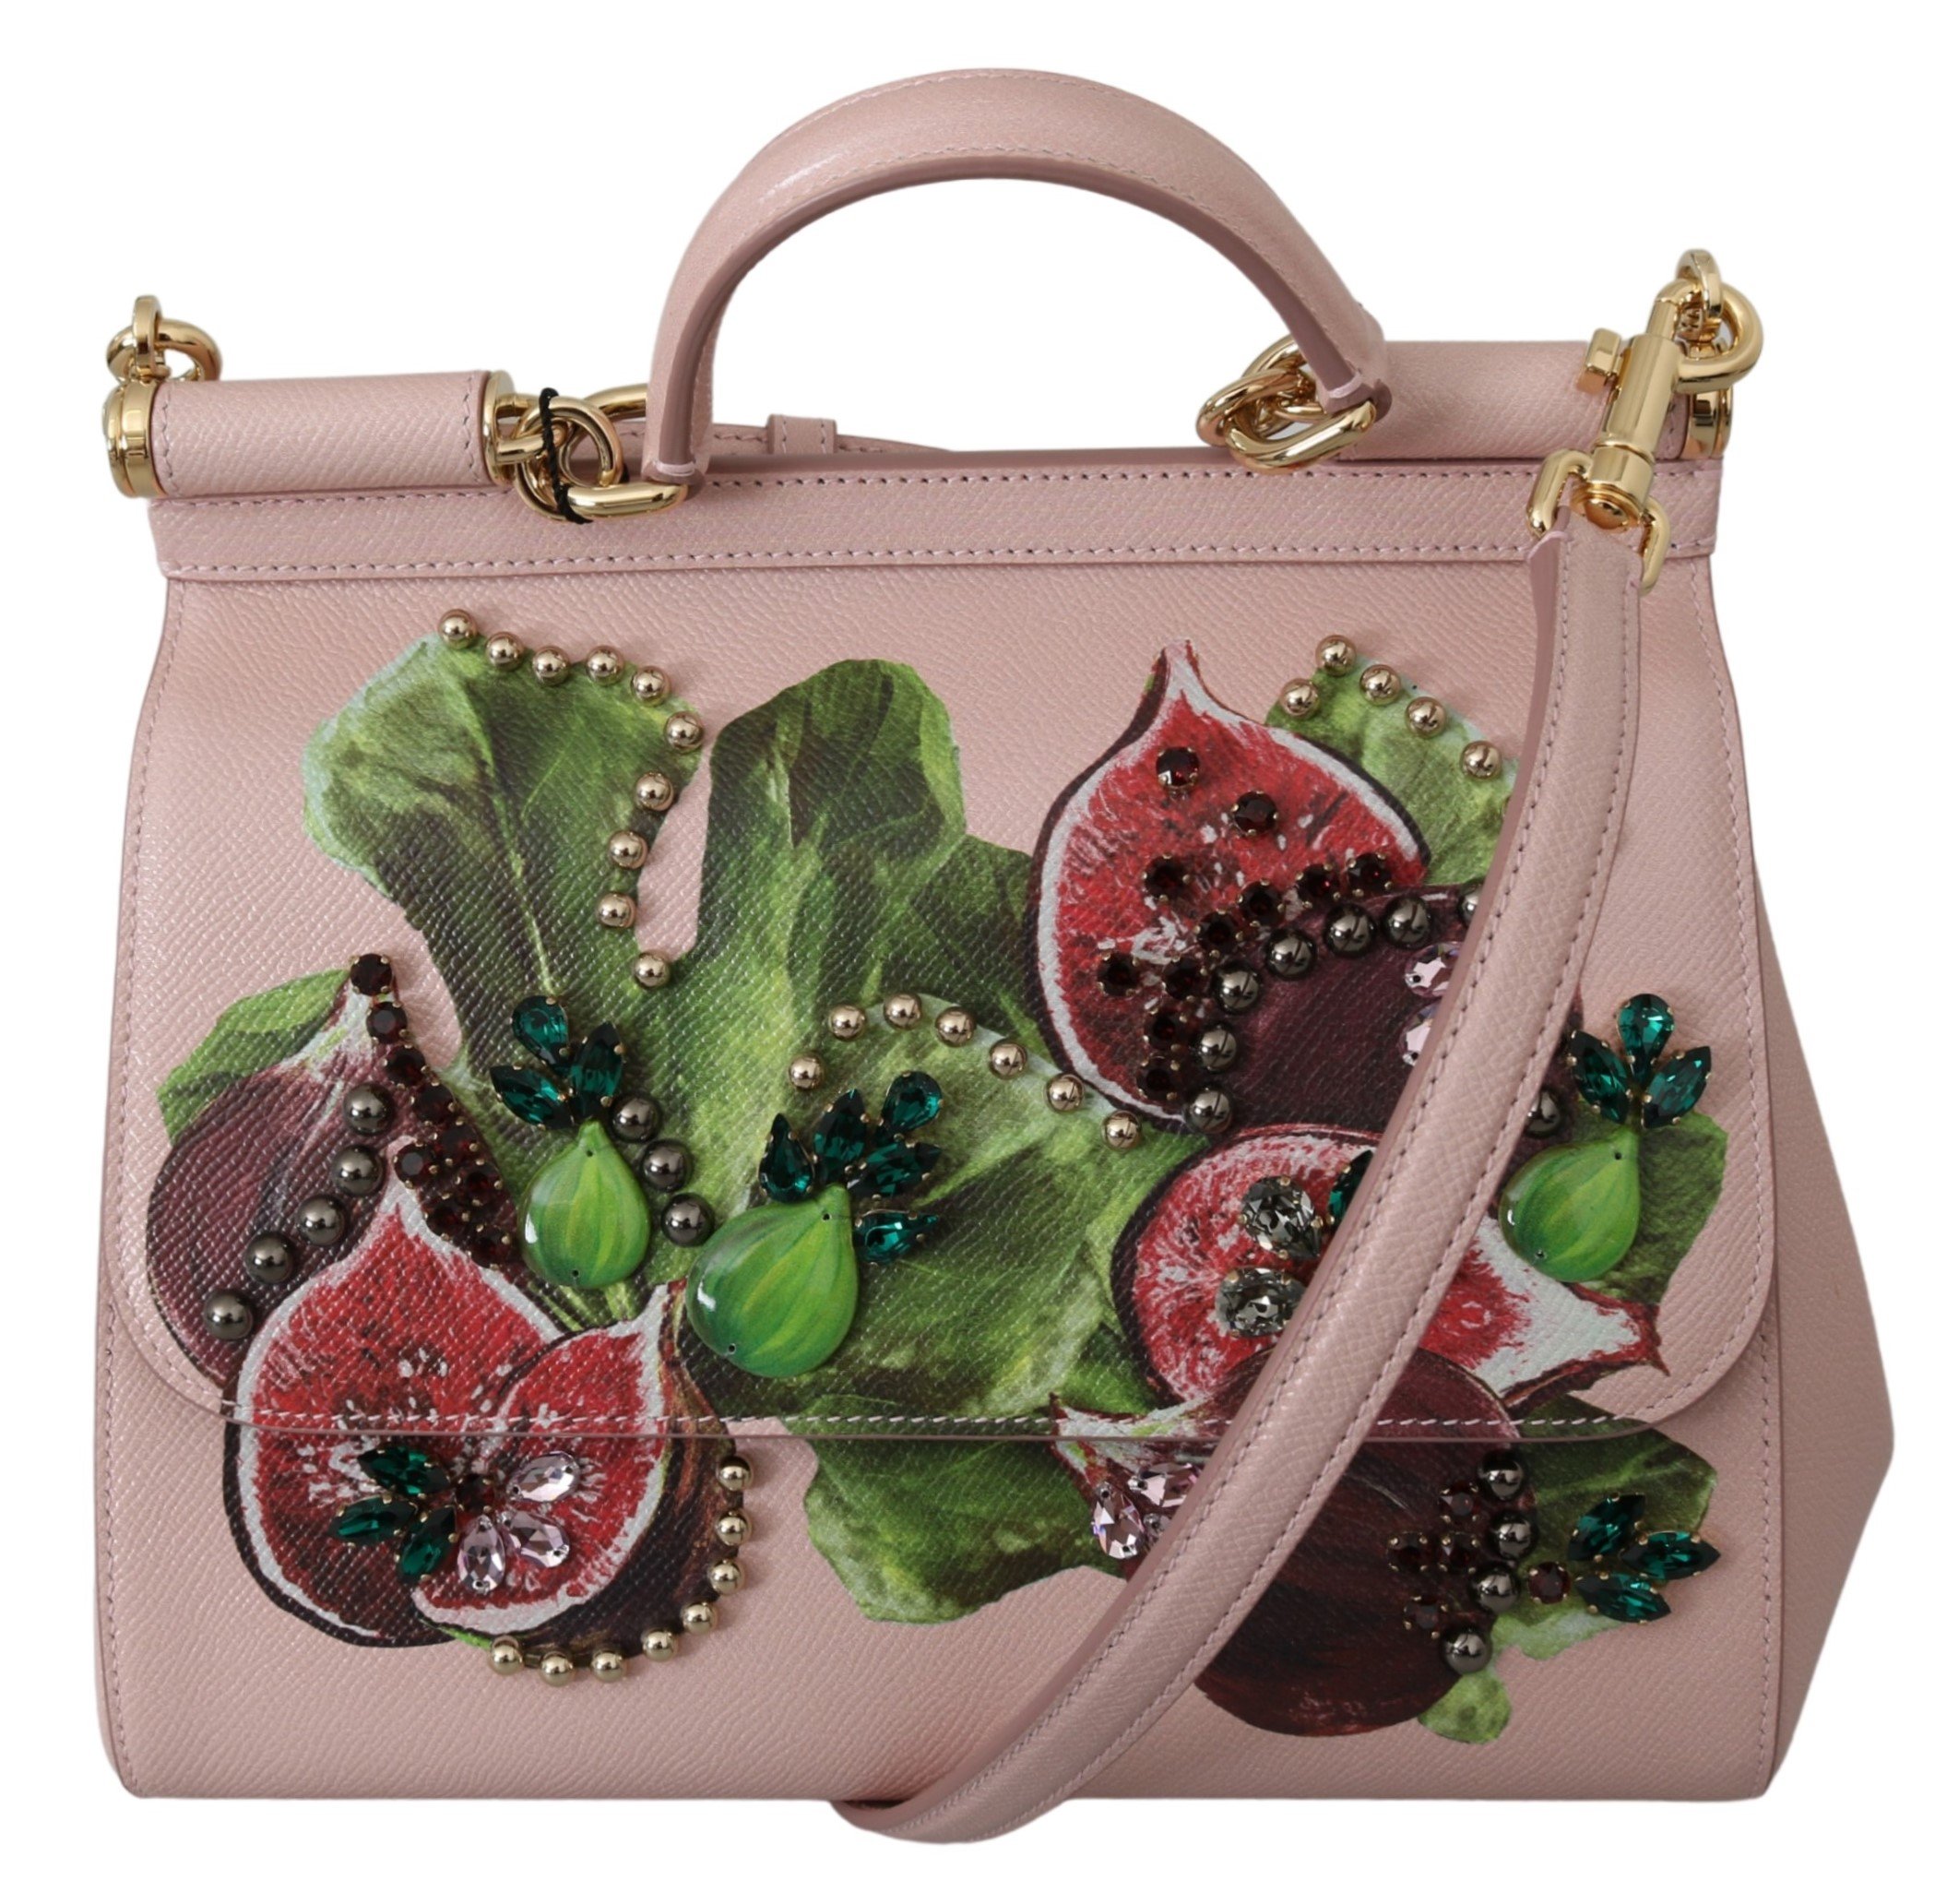 Dolce & Gabbana Women's Fruit Crystal Leather Shoulder Bag Pink VAS9956